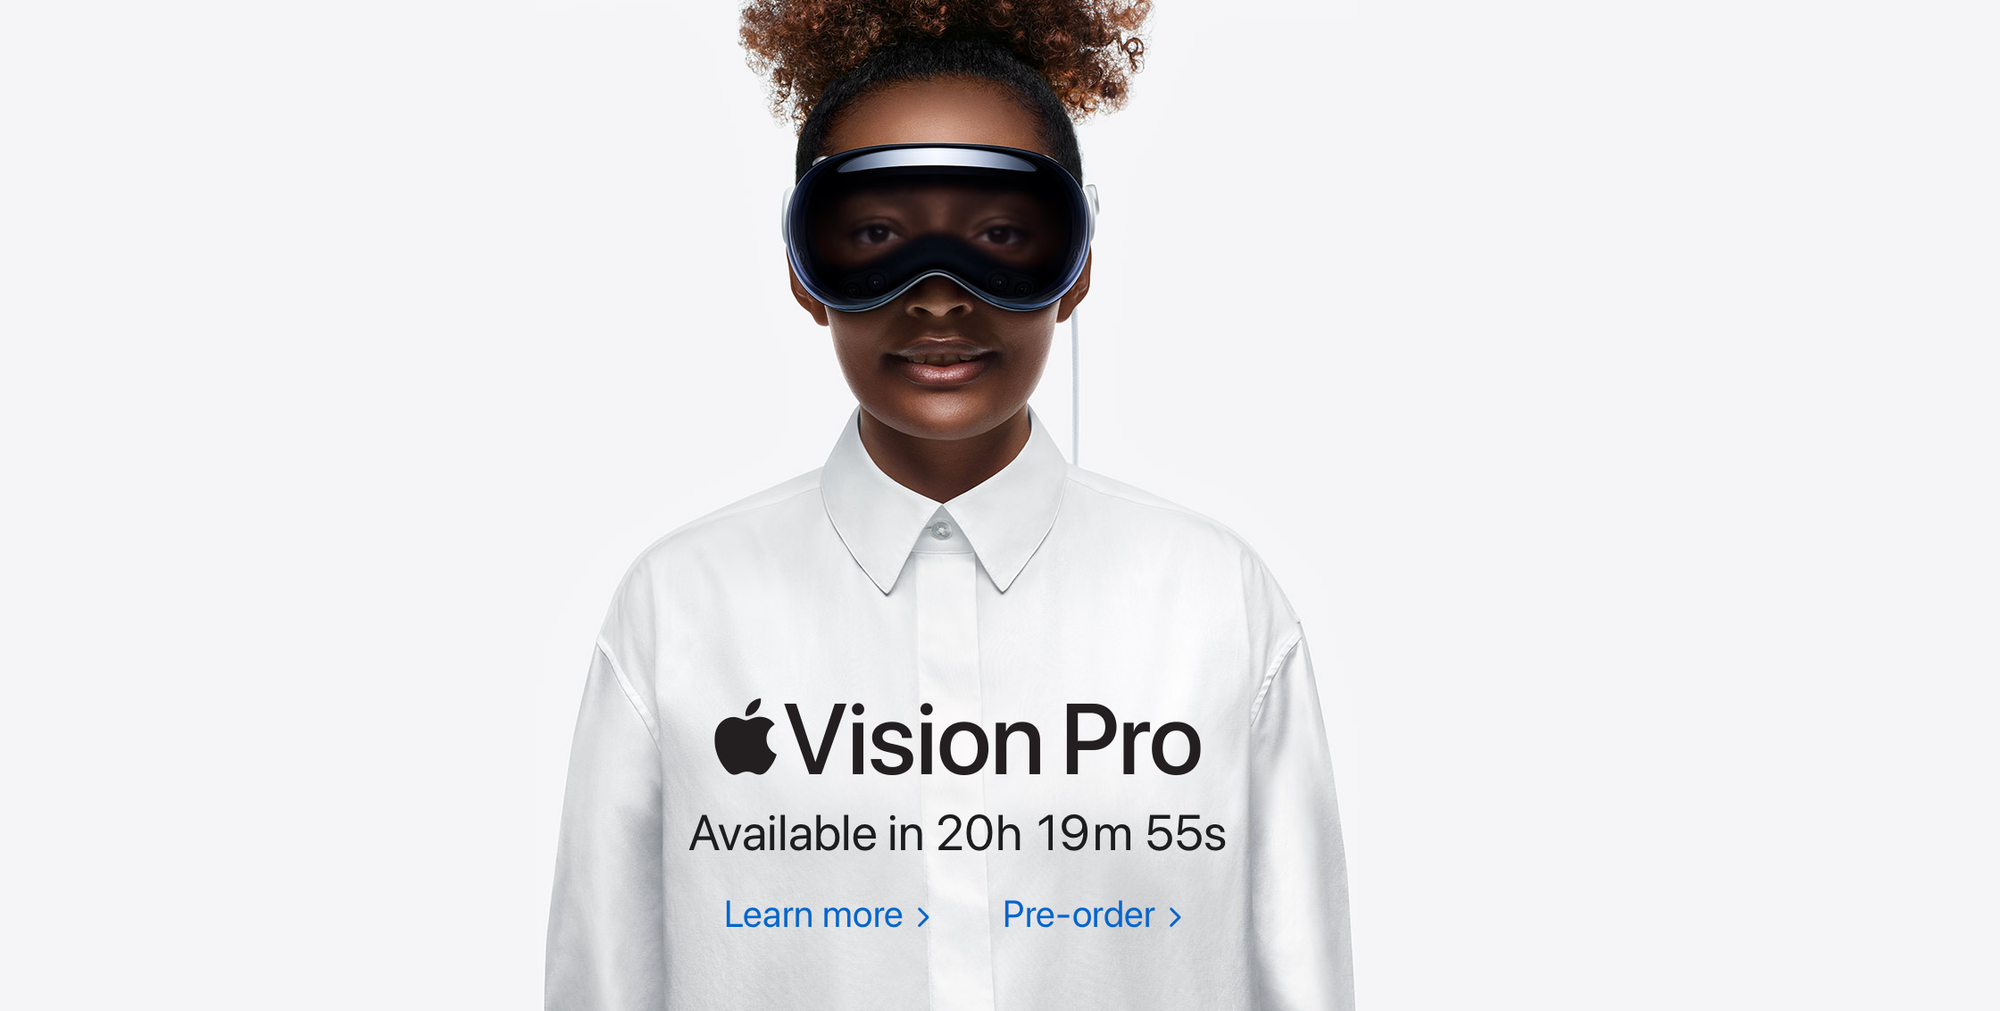 Eine Frau trägt in einer Apple Werbung die Vision Pro, ein VR Brille vom Hersteller.